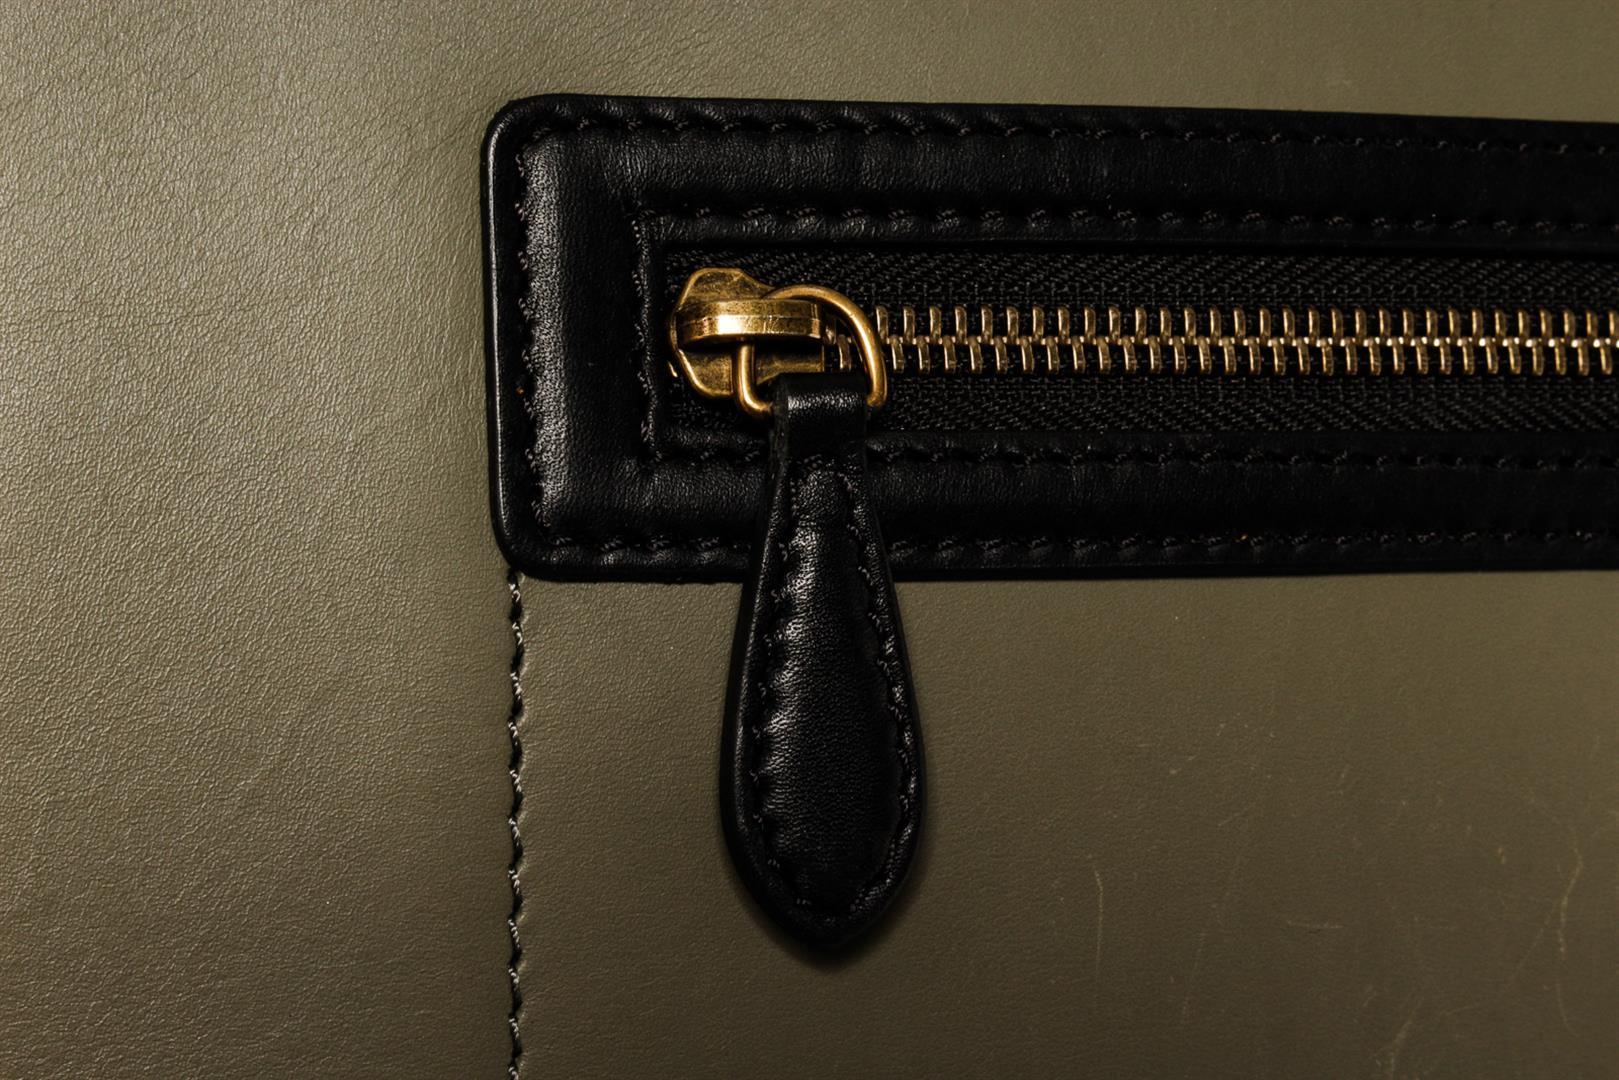 Celine Black Multicolor Suede Leather Micro Luggage Handbag